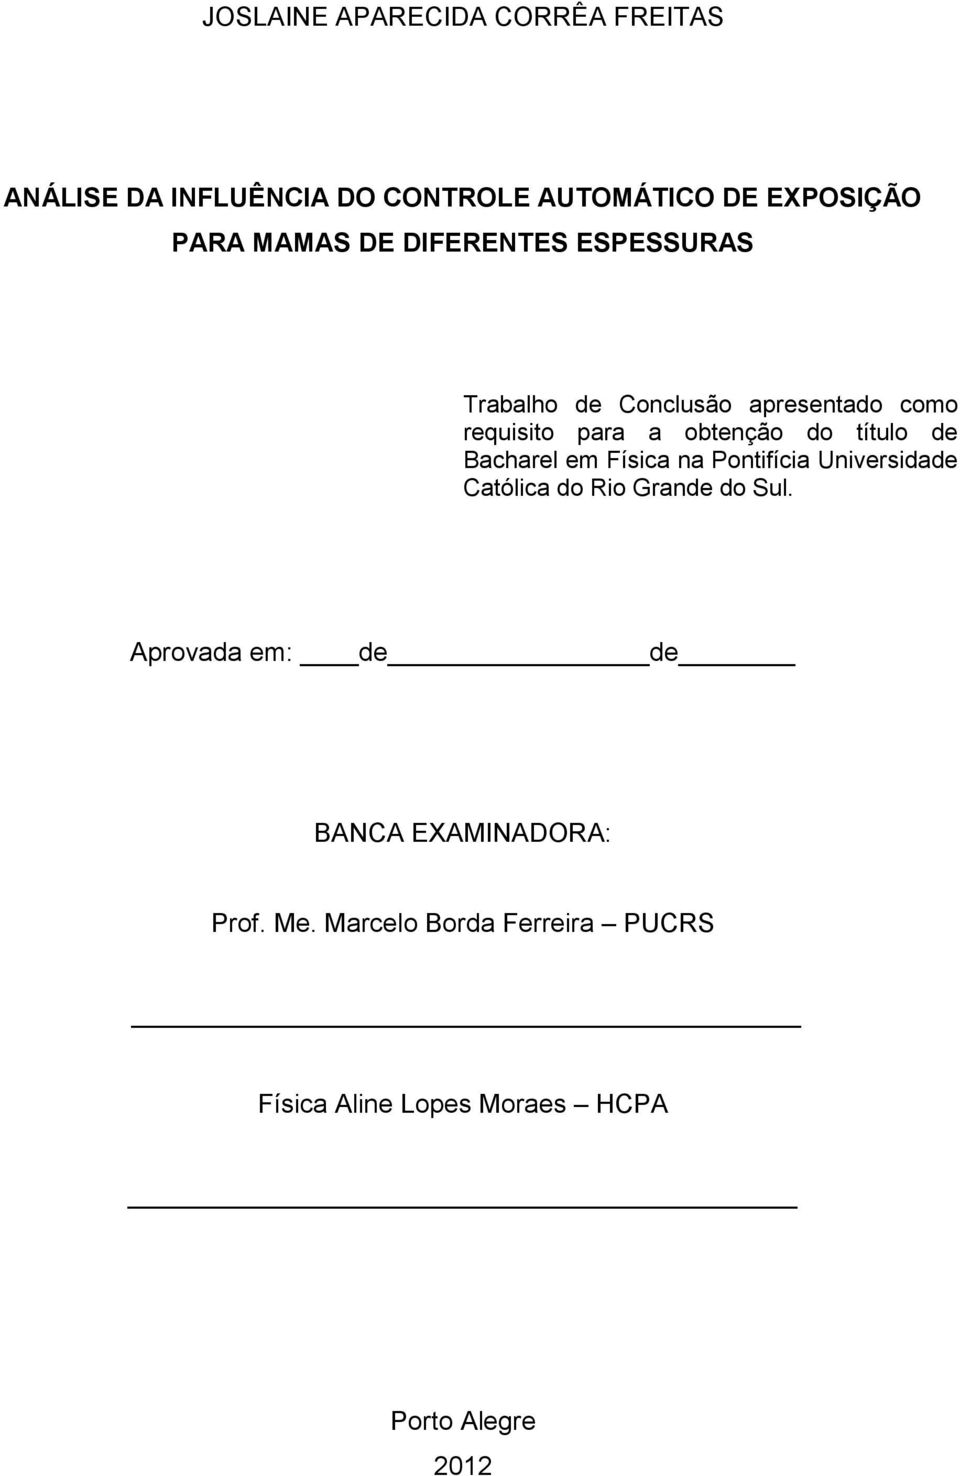 título de Bacharel em Física na Pontifícia Universidade Católica do Rio Grande do Sul.